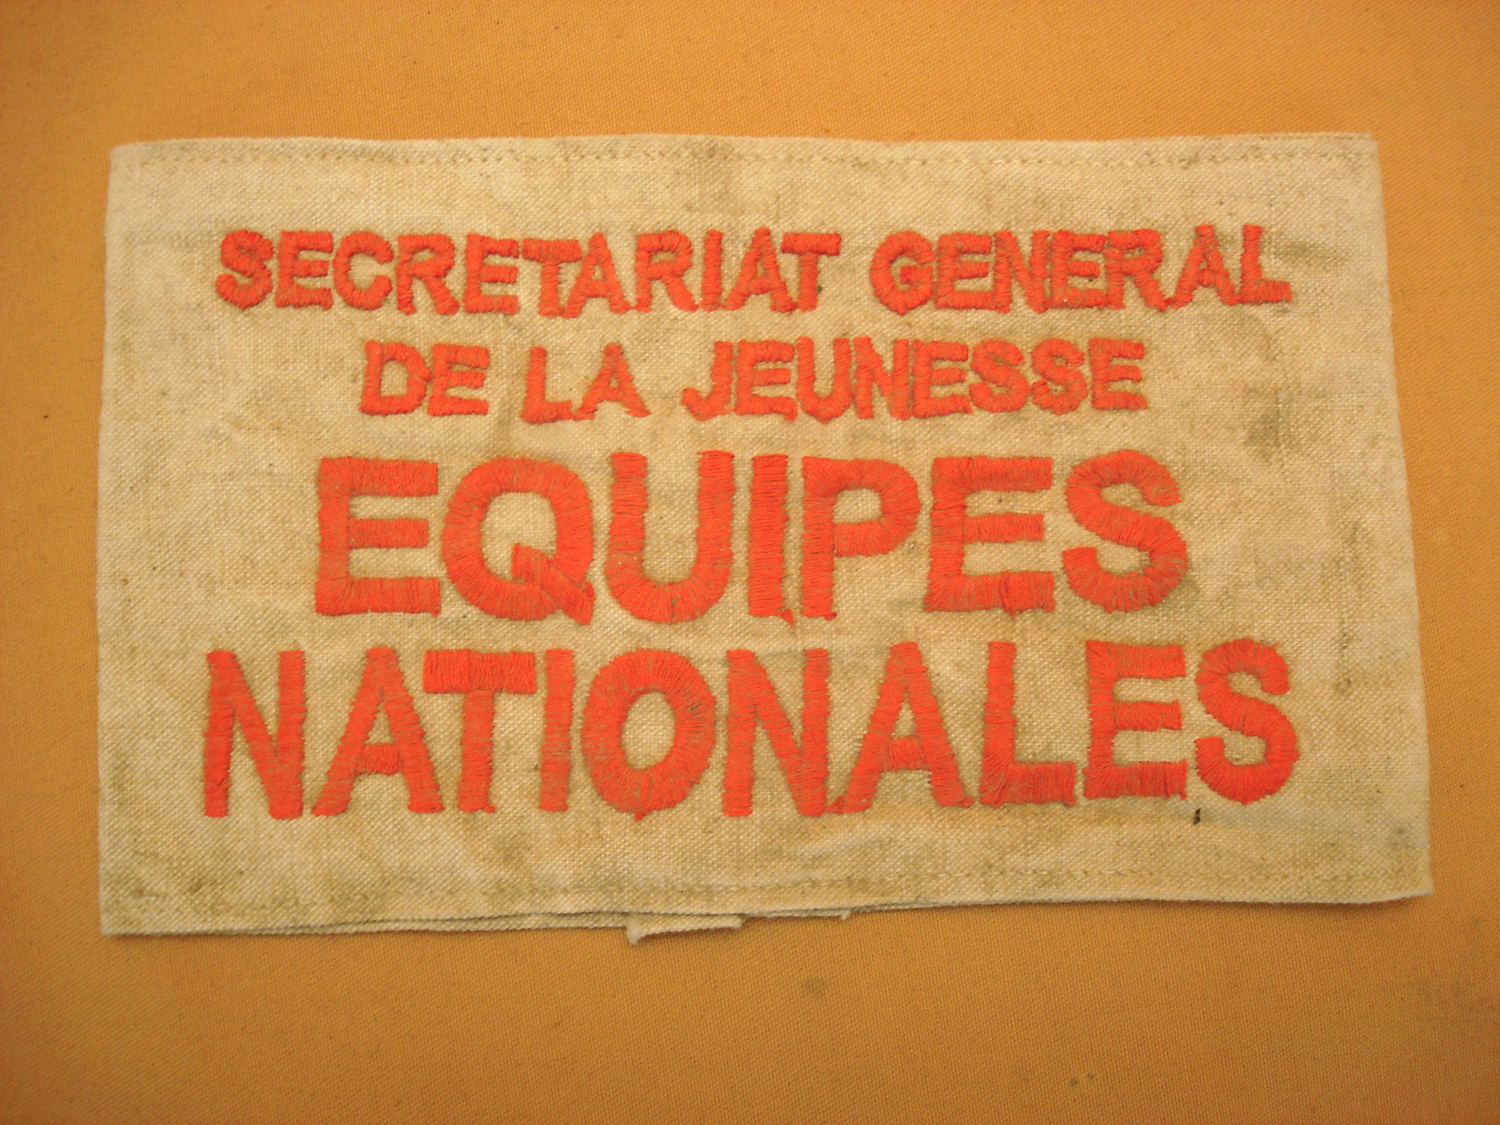 Brassard "ÉQUIPES NATIONALES".